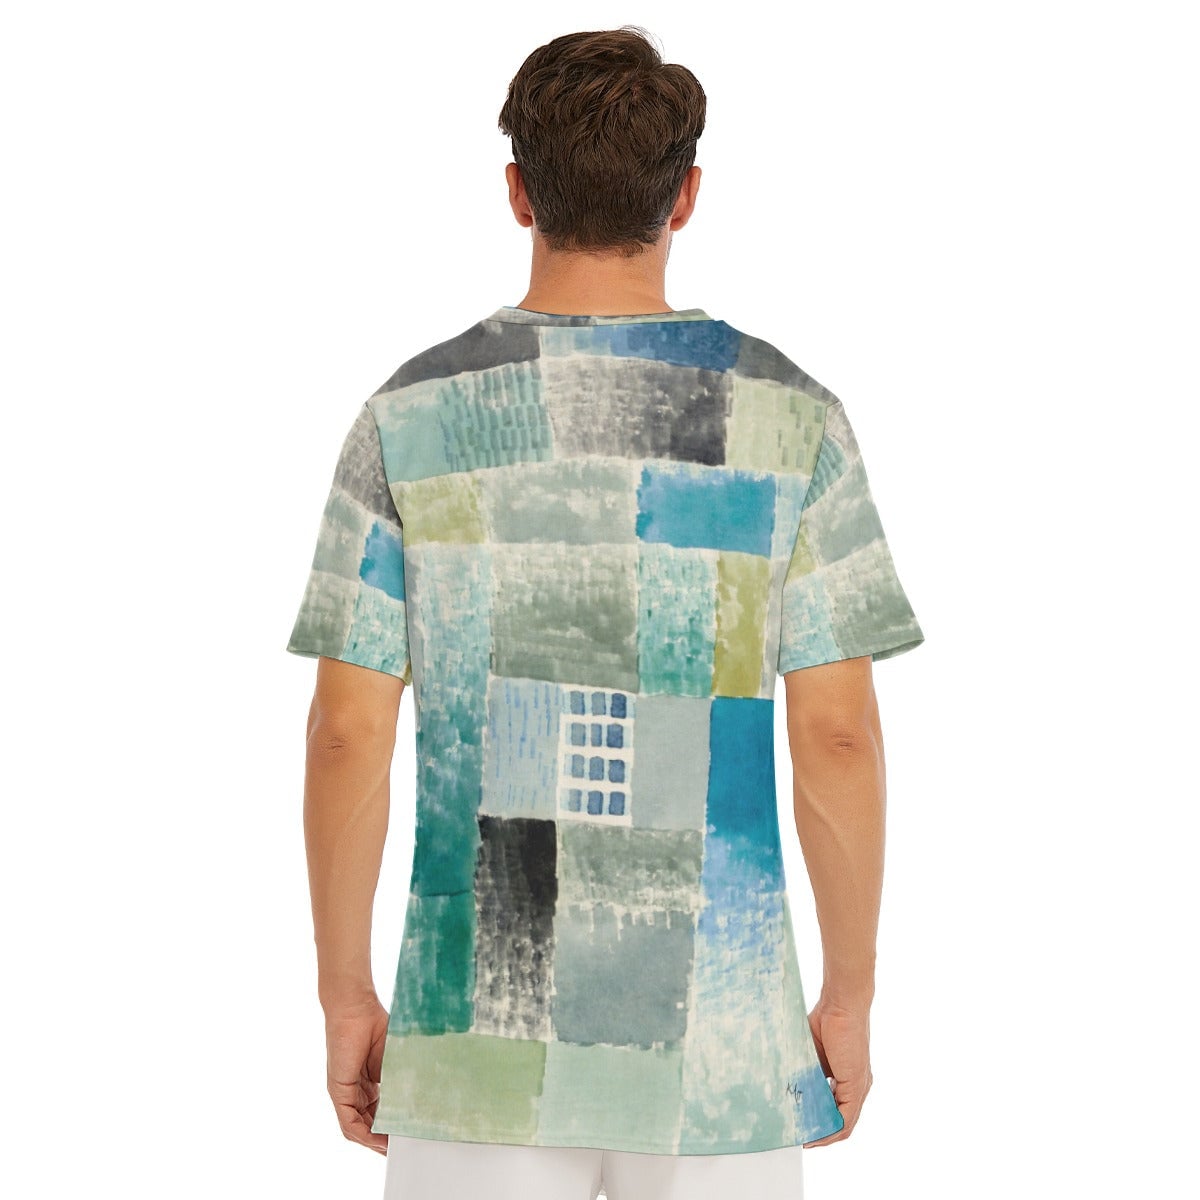 First House in a Settlement Paul Klee T-Shirt - Art Tee